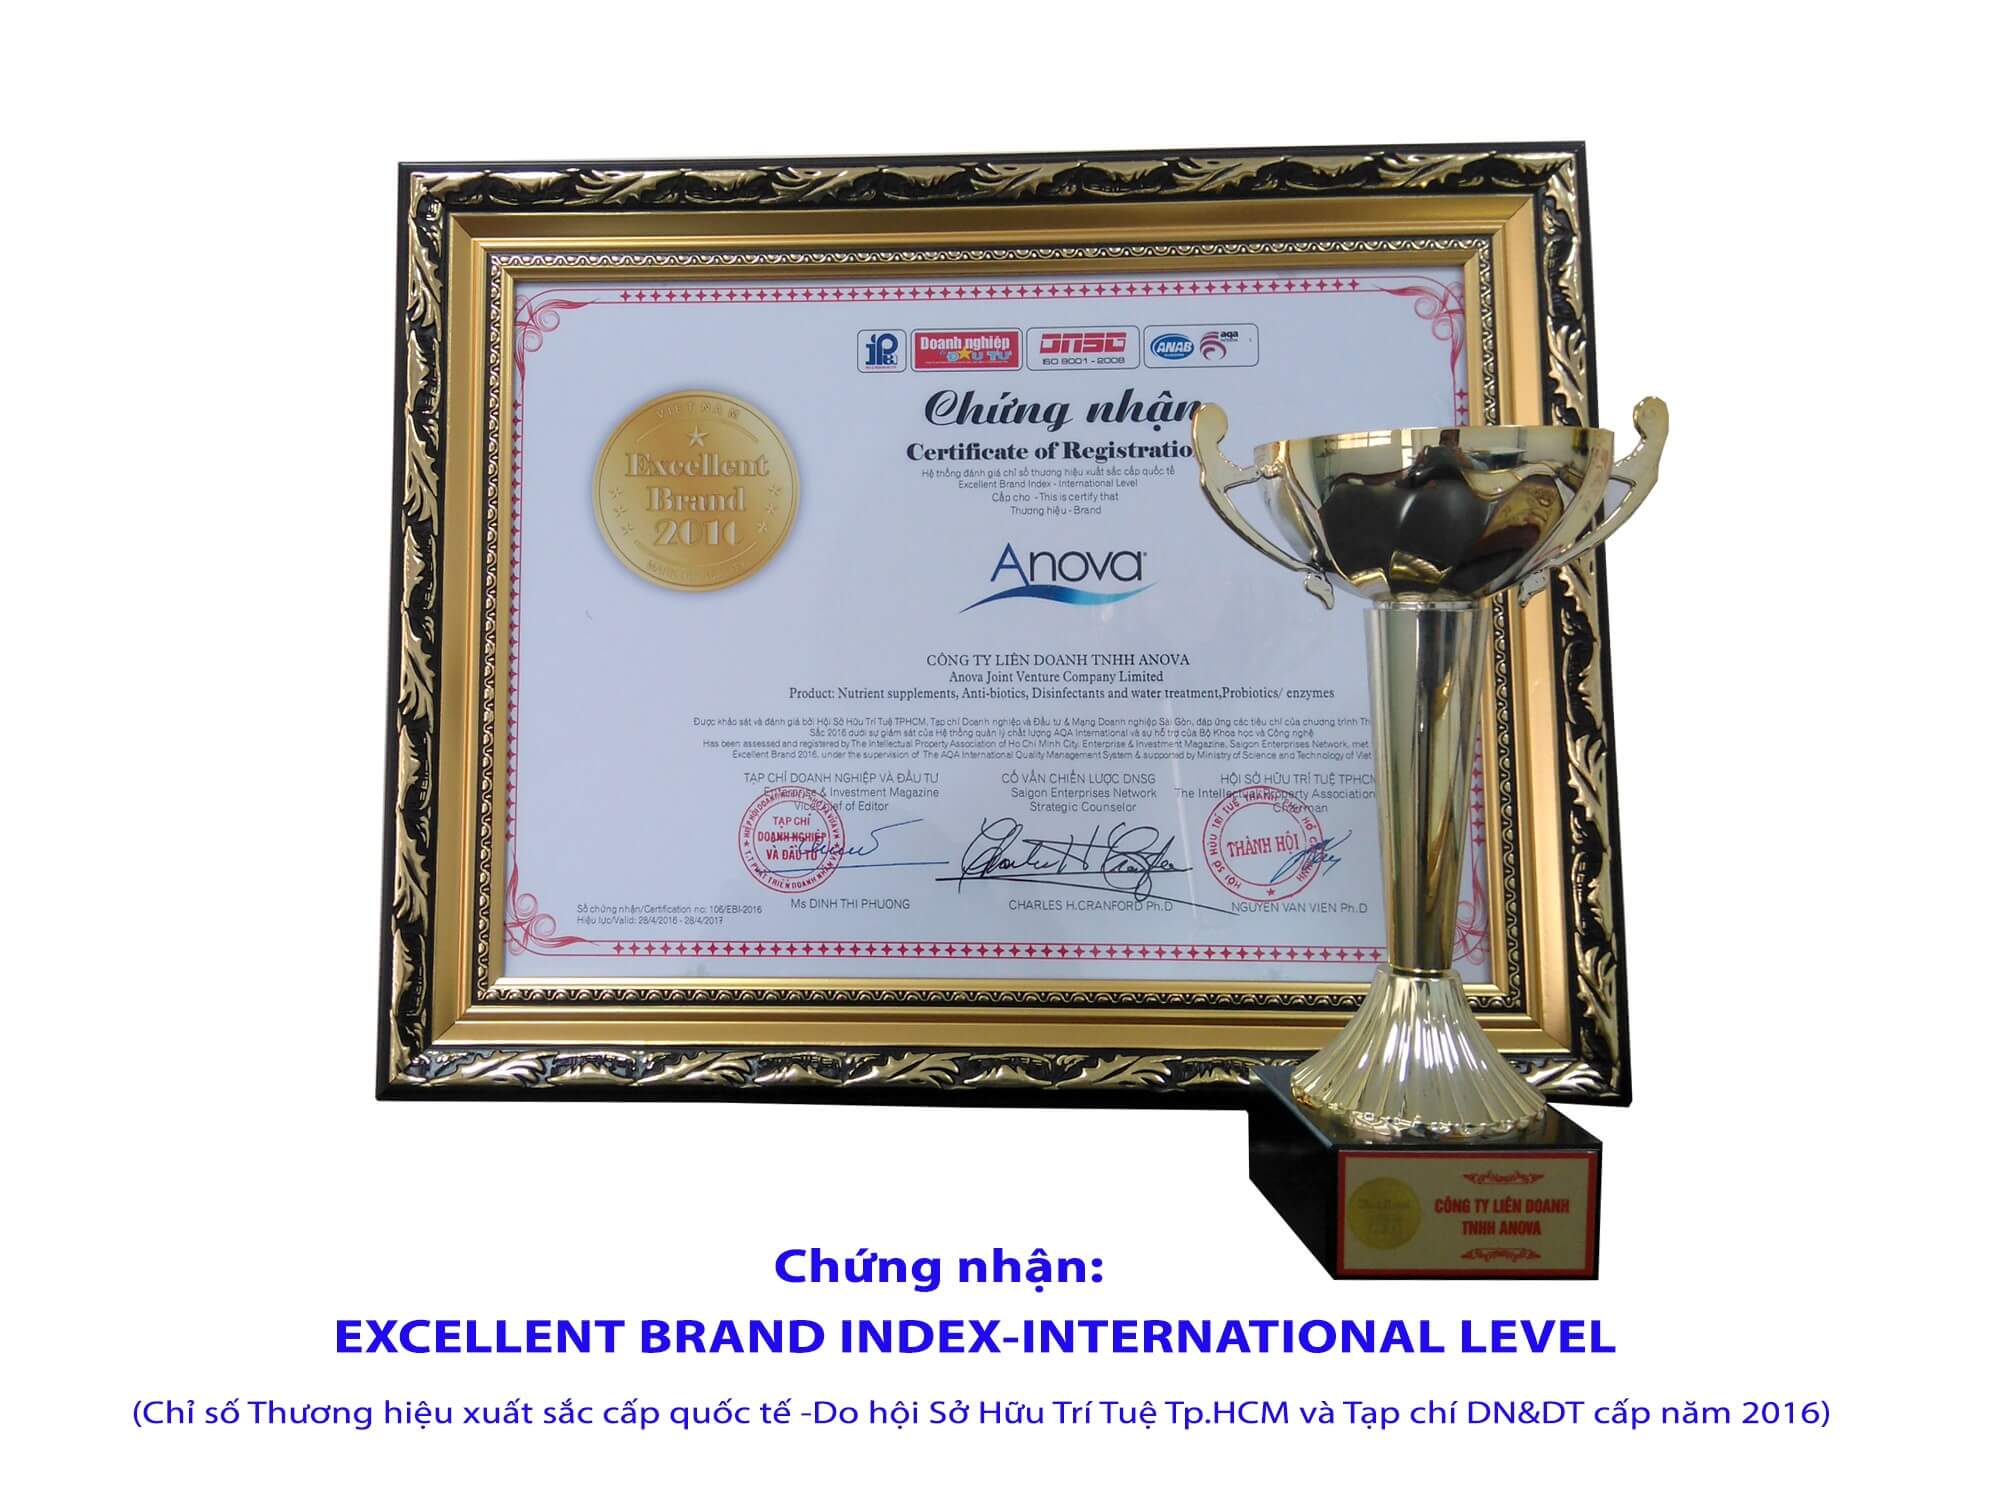 Chứng nhận: Excellent Brand Index-International Level (Chỉ số Thương hiệu xuất sắc cấp quốc tế - Do hội Sở Hữu Trí Tuệ TP.HCM và Tạp chí DN&DT cấp năm 2016)